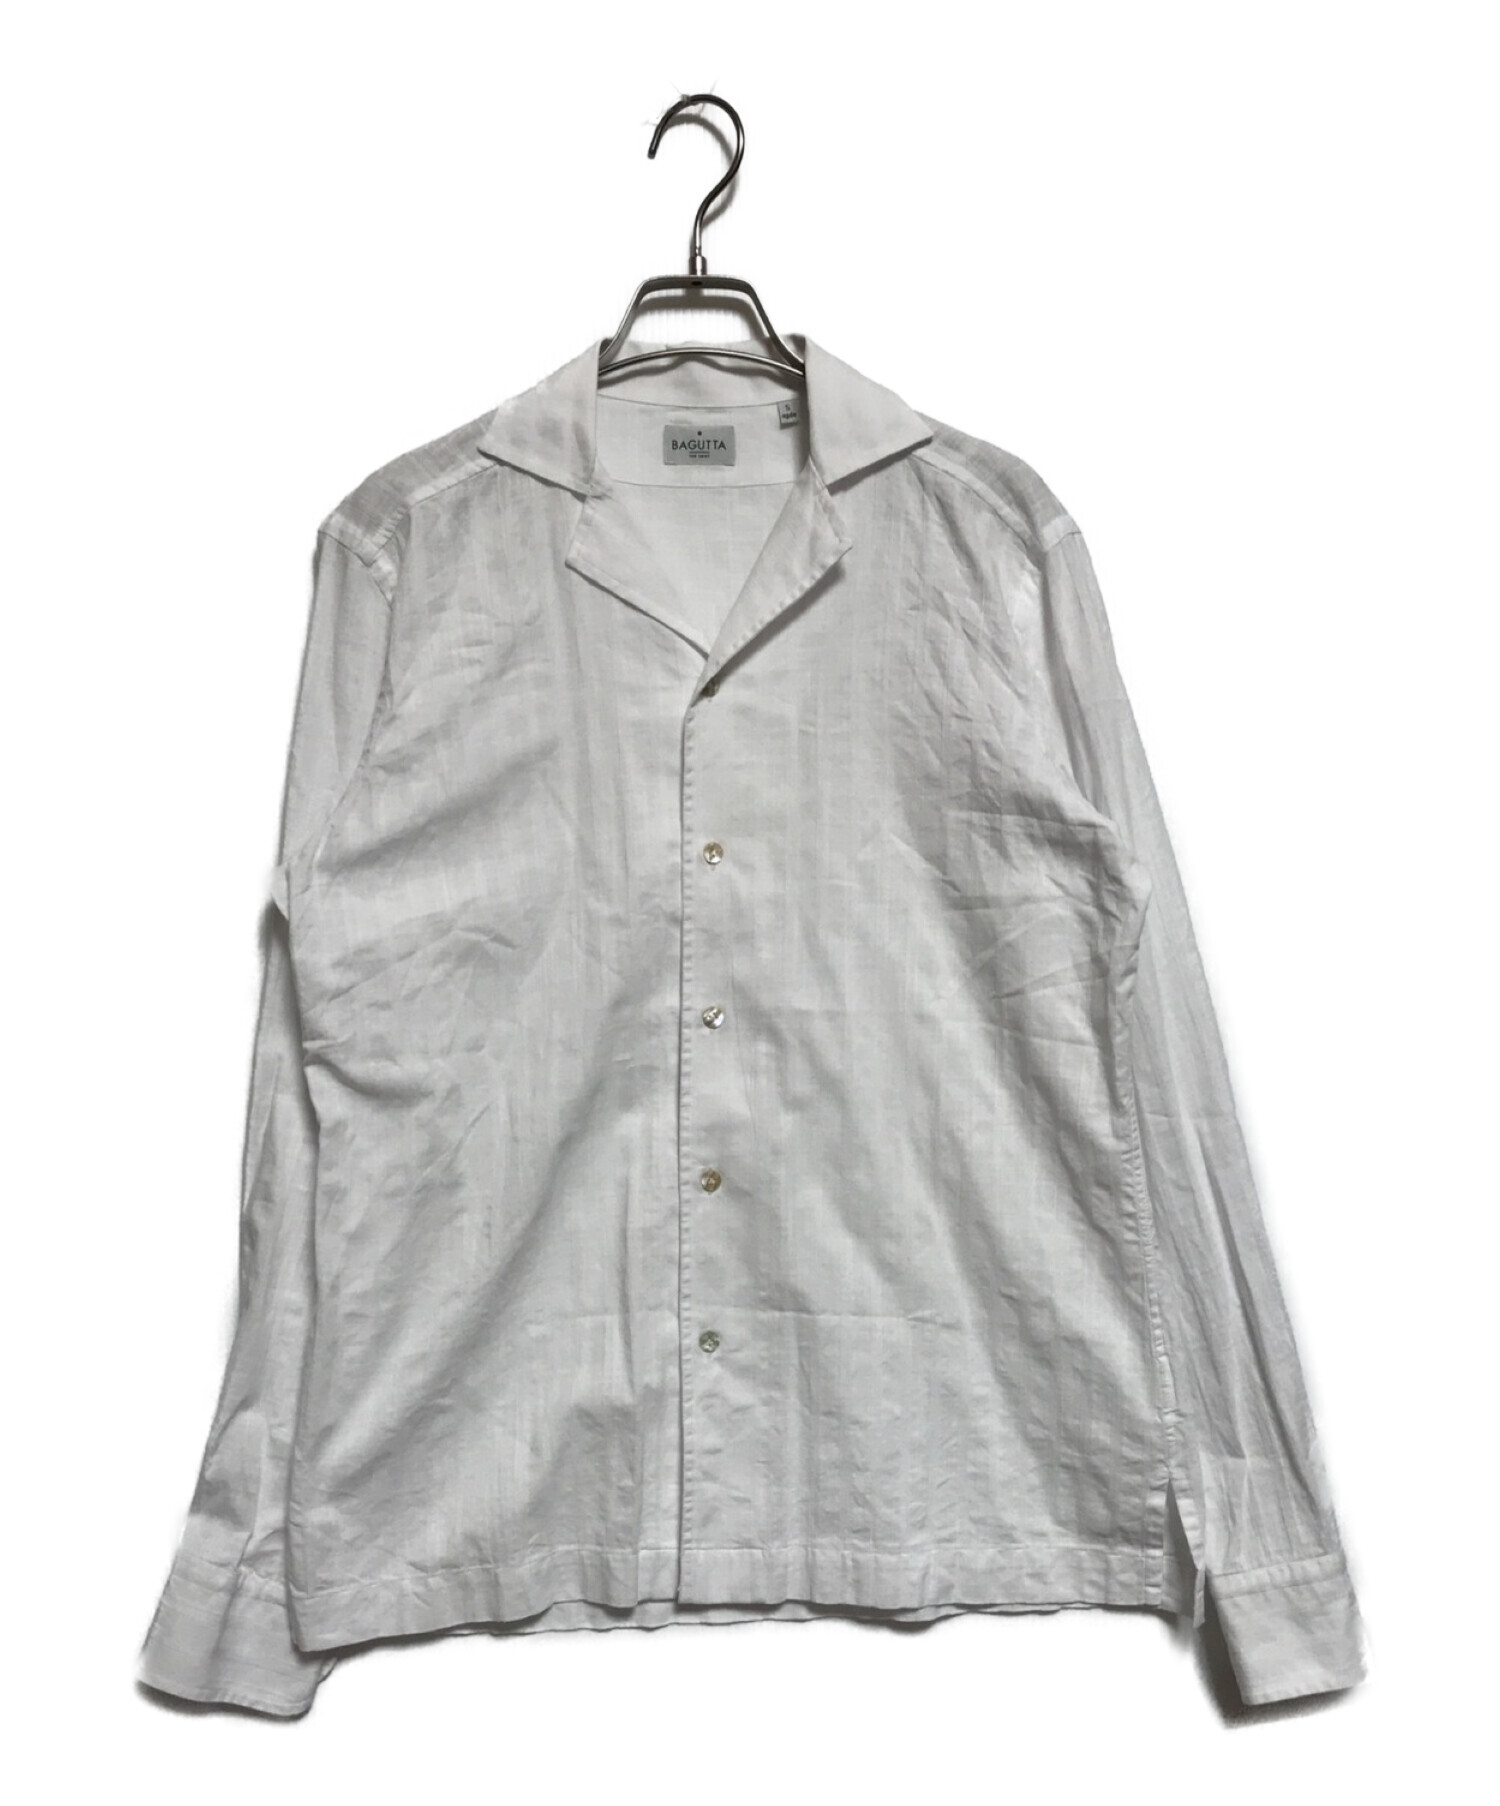 Bagutta (バグッタ) オープンカラーシャツ ホワイト サイズ:S(下記参照)